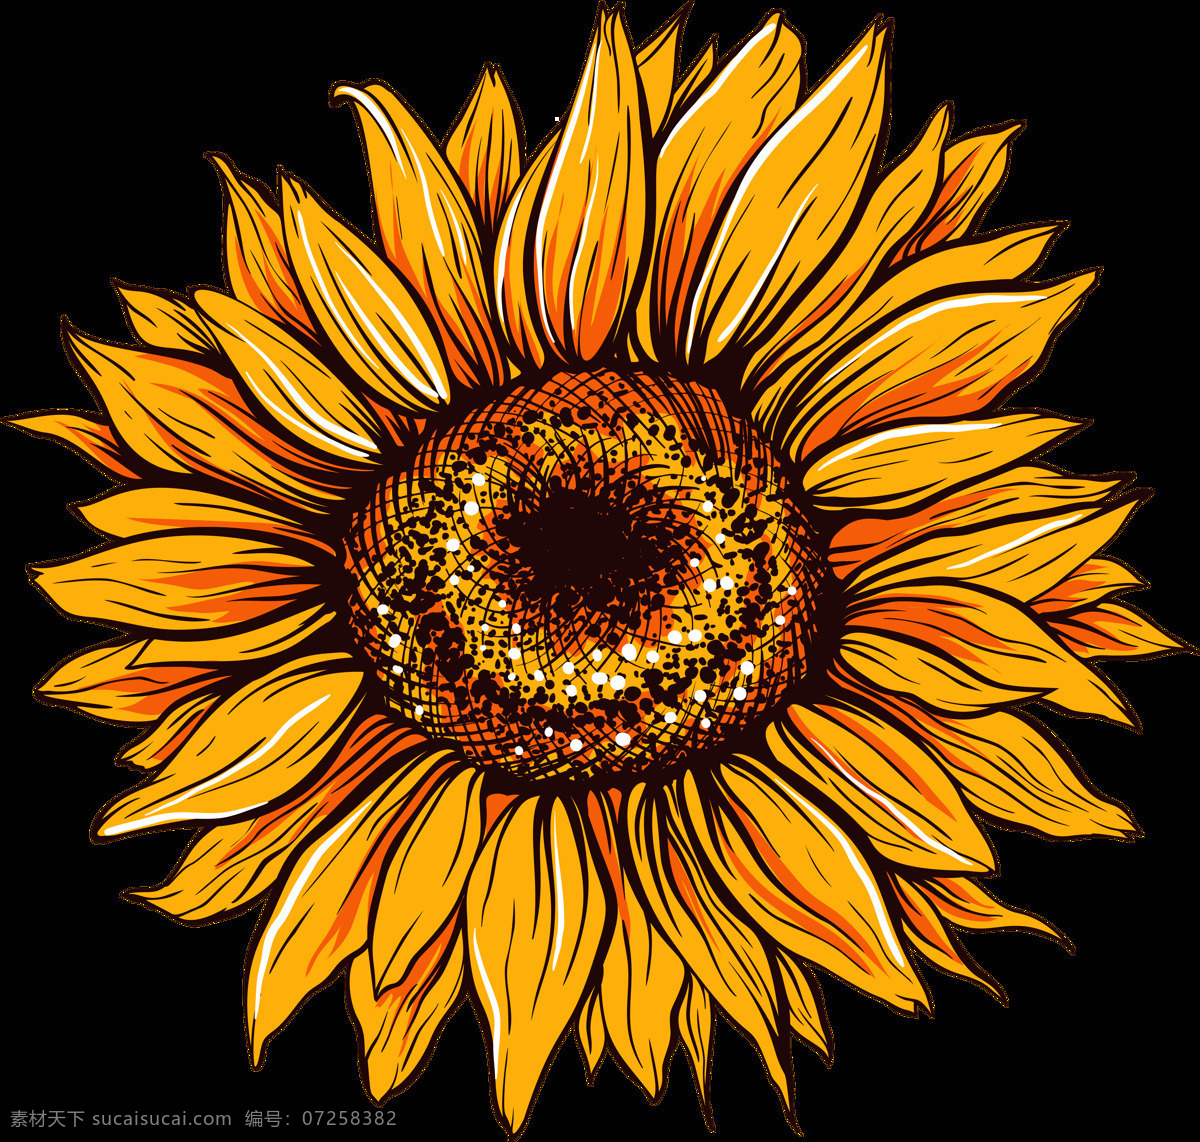 水彩 手绘 植物 向日葵 花朵 涂鸦 创意 插画图案 太阳花 绿叶 文化艺术 绘画书法